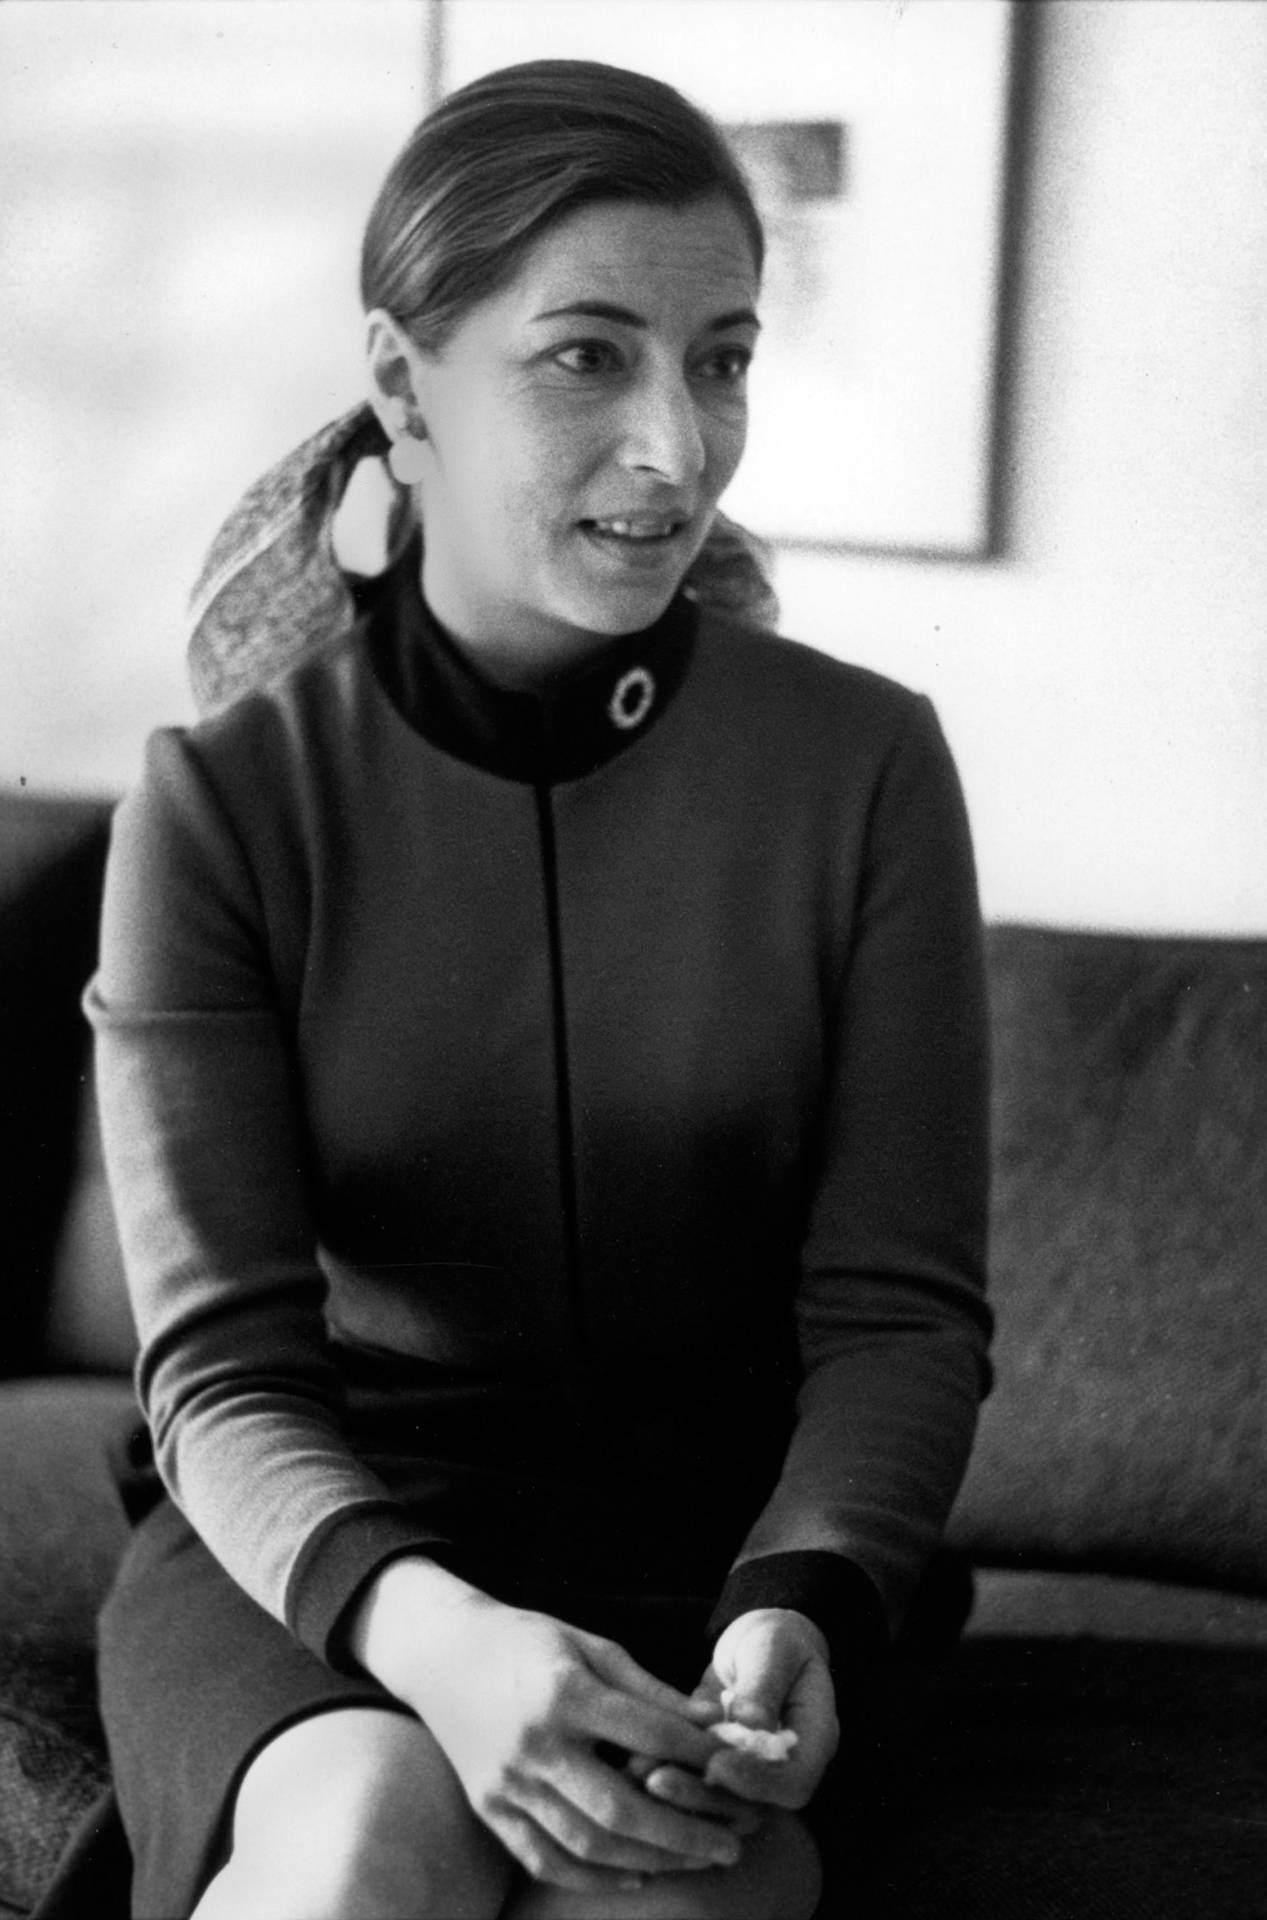 Young Ruth Bader Ginsburg Photograph